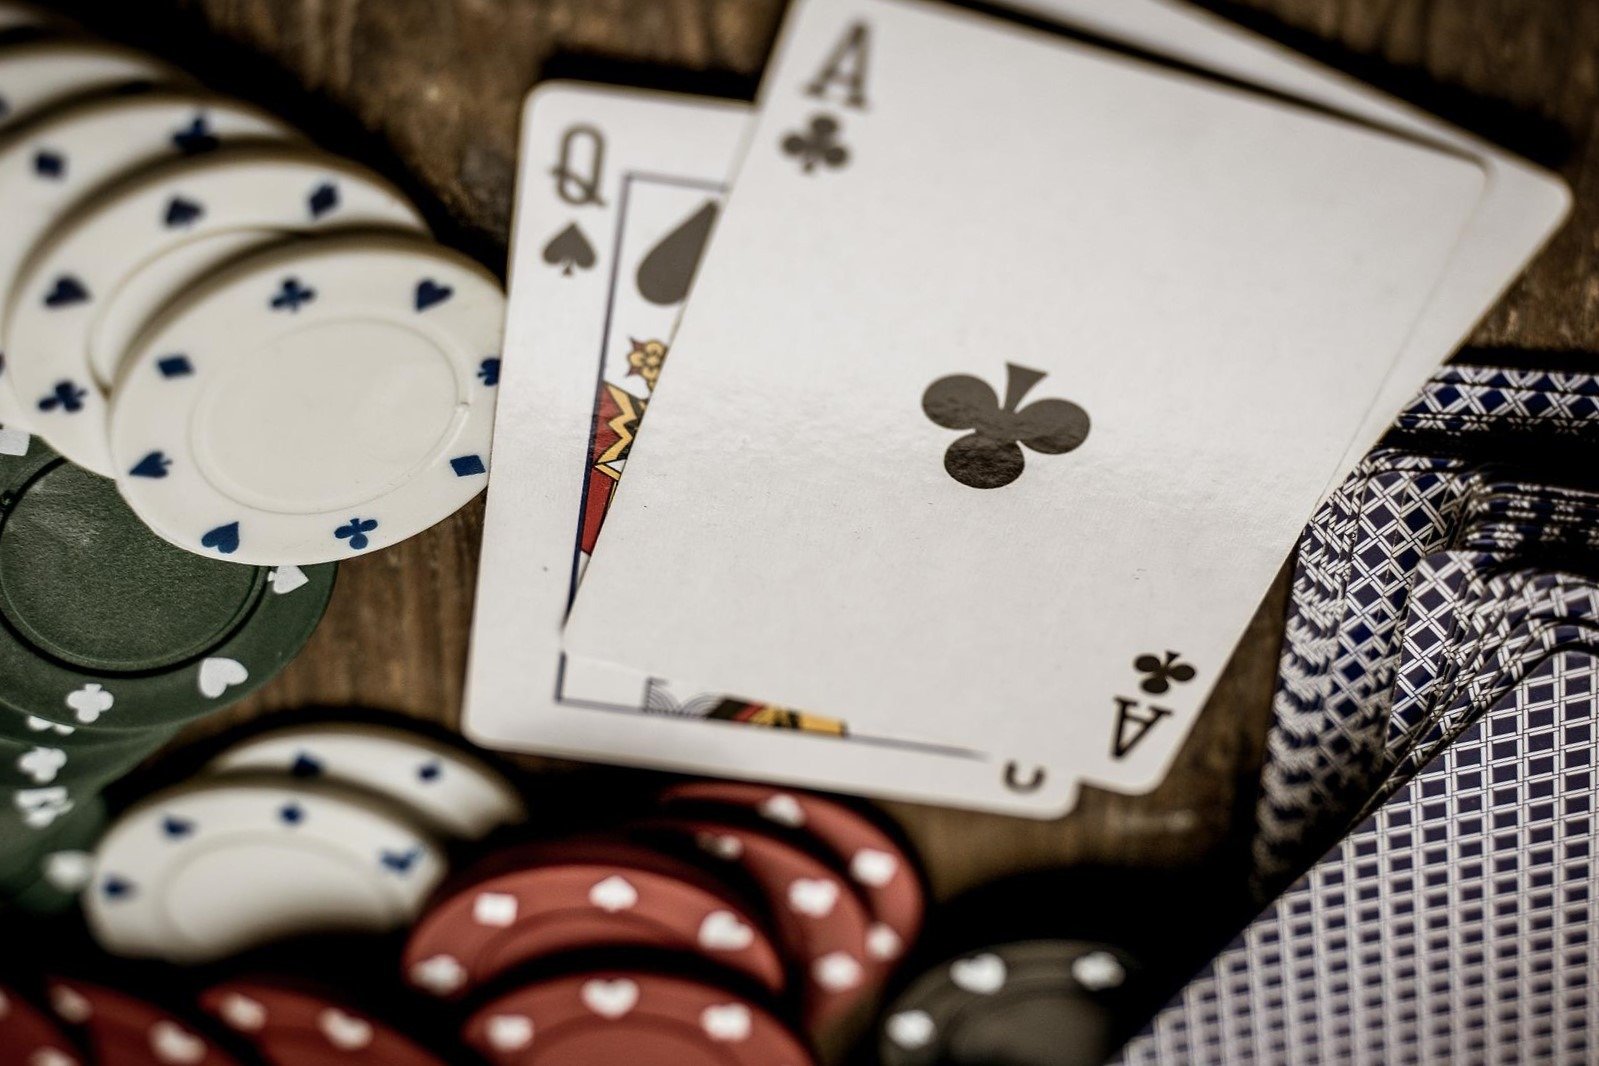 Se você está procurando um jogo interessante para se divertir no cassino online, precisa conhecer as vantagens que o poker oferece.